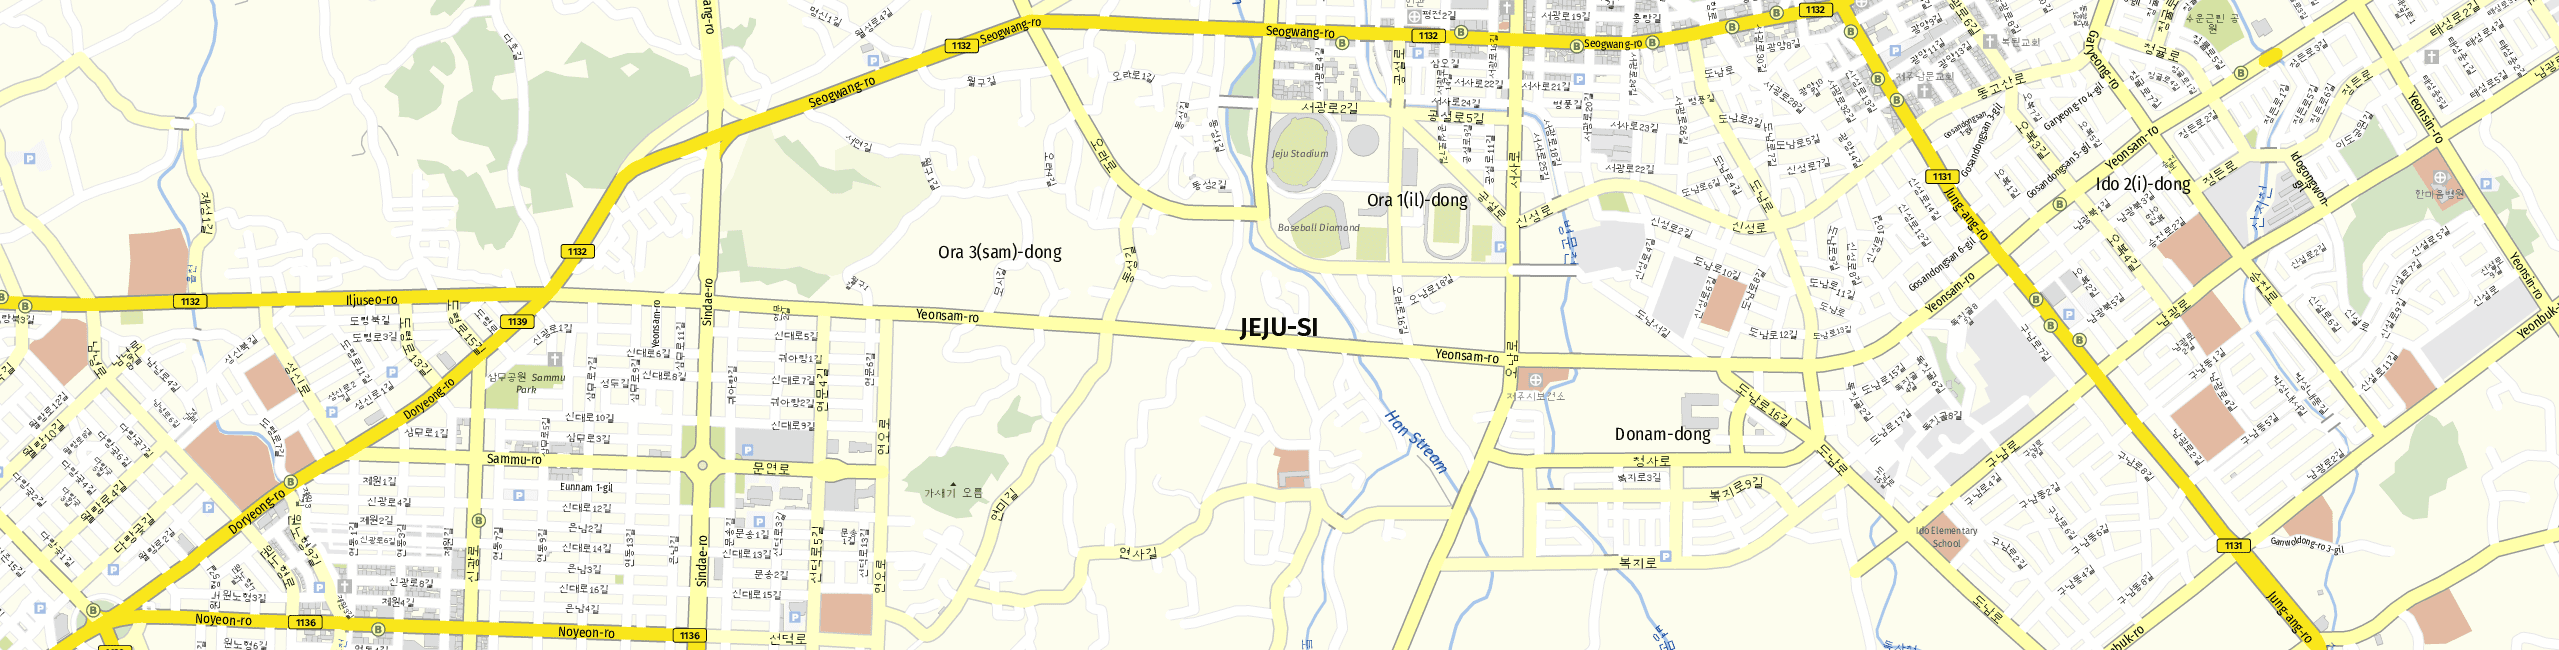 Stadtplan Jeju-si zum Downloaden.